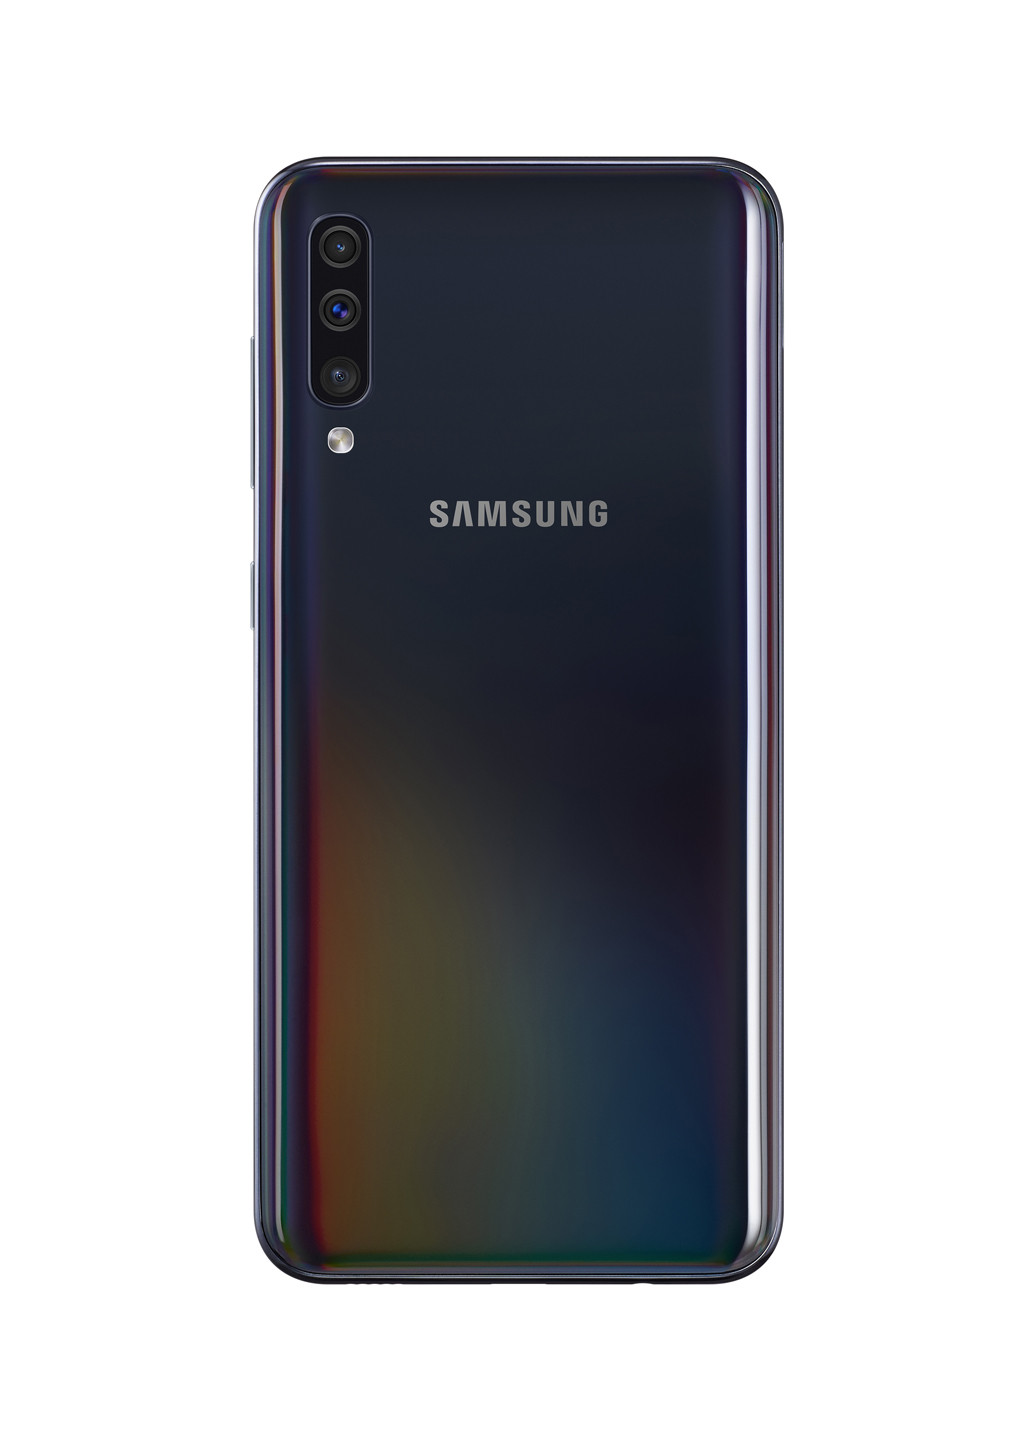 Смартфон Samsung galaxy a50 4/64gb black (sm-a505fzkusek) (131063856)